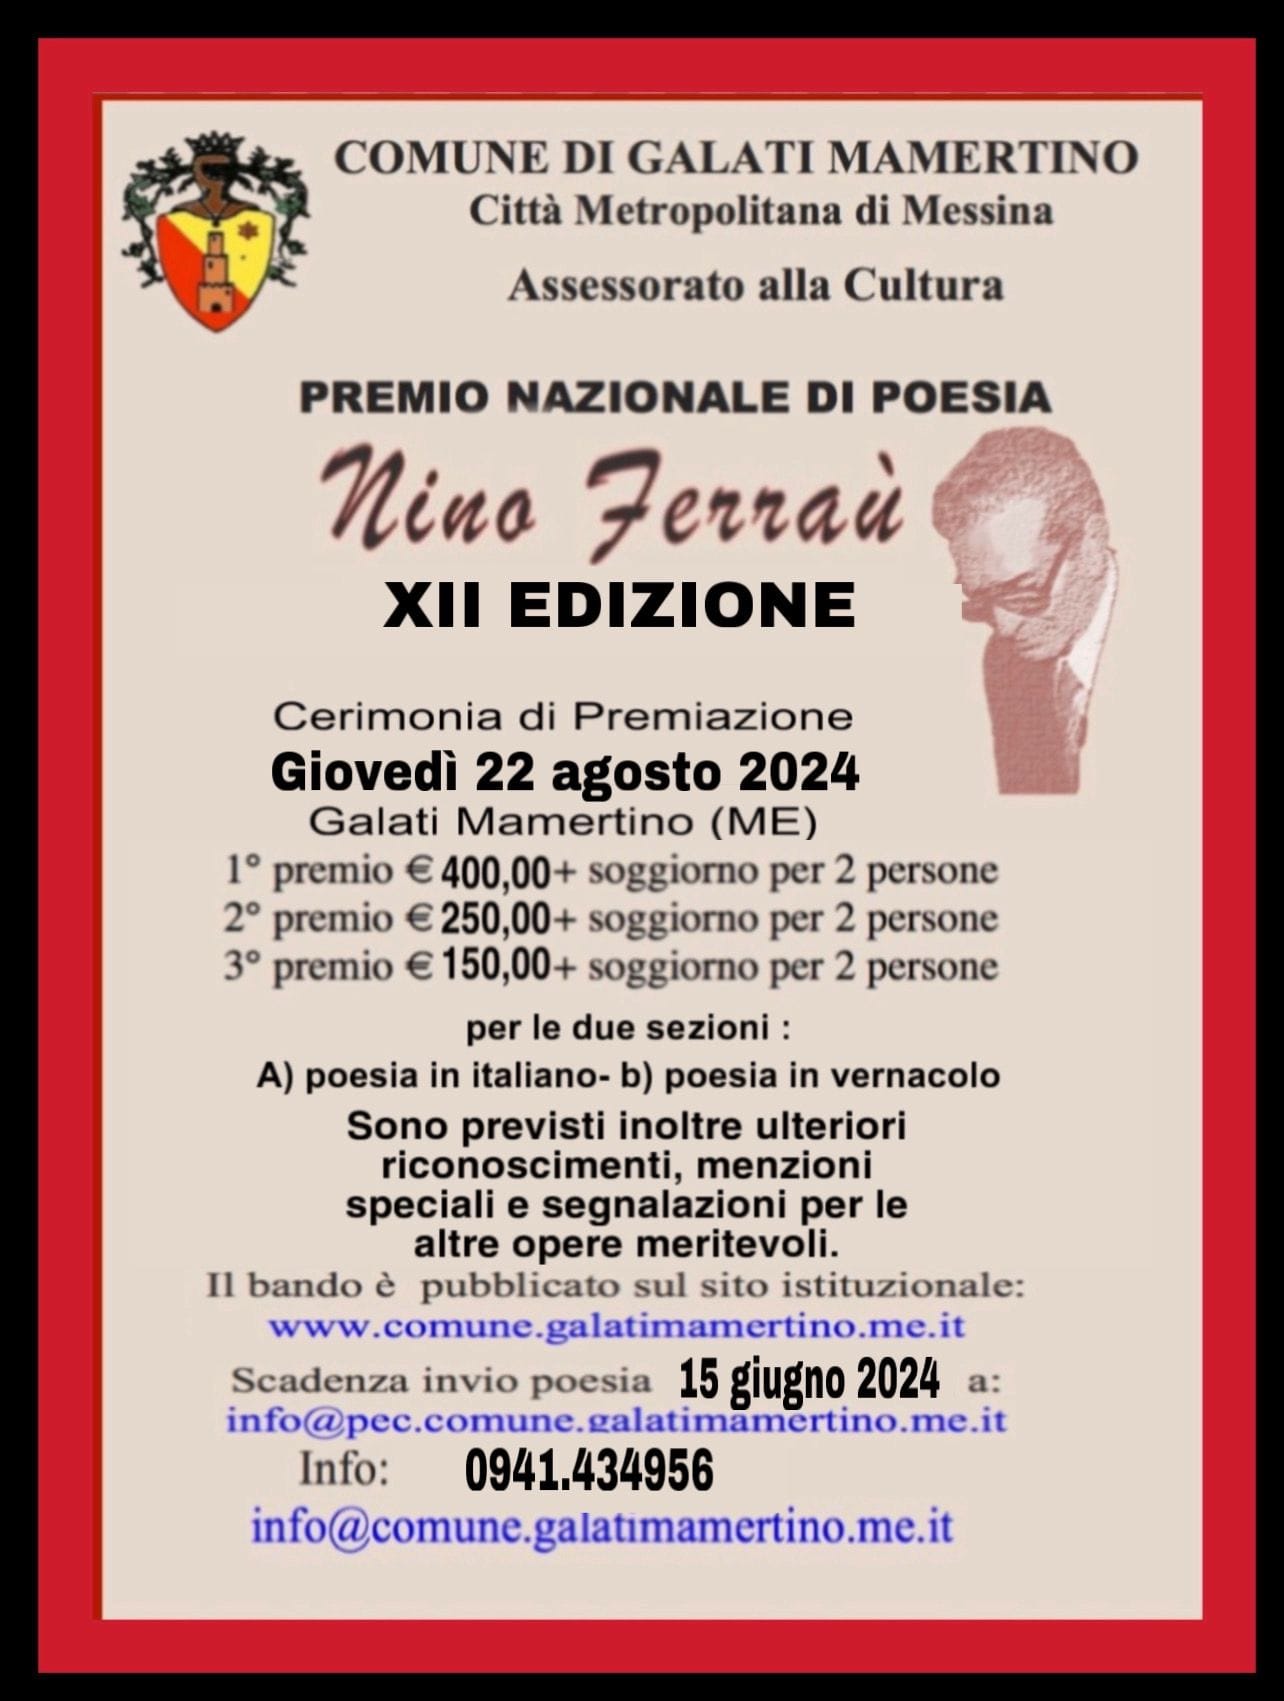 Premio Nazionale di Poesia “Nino Ferraù” 2024